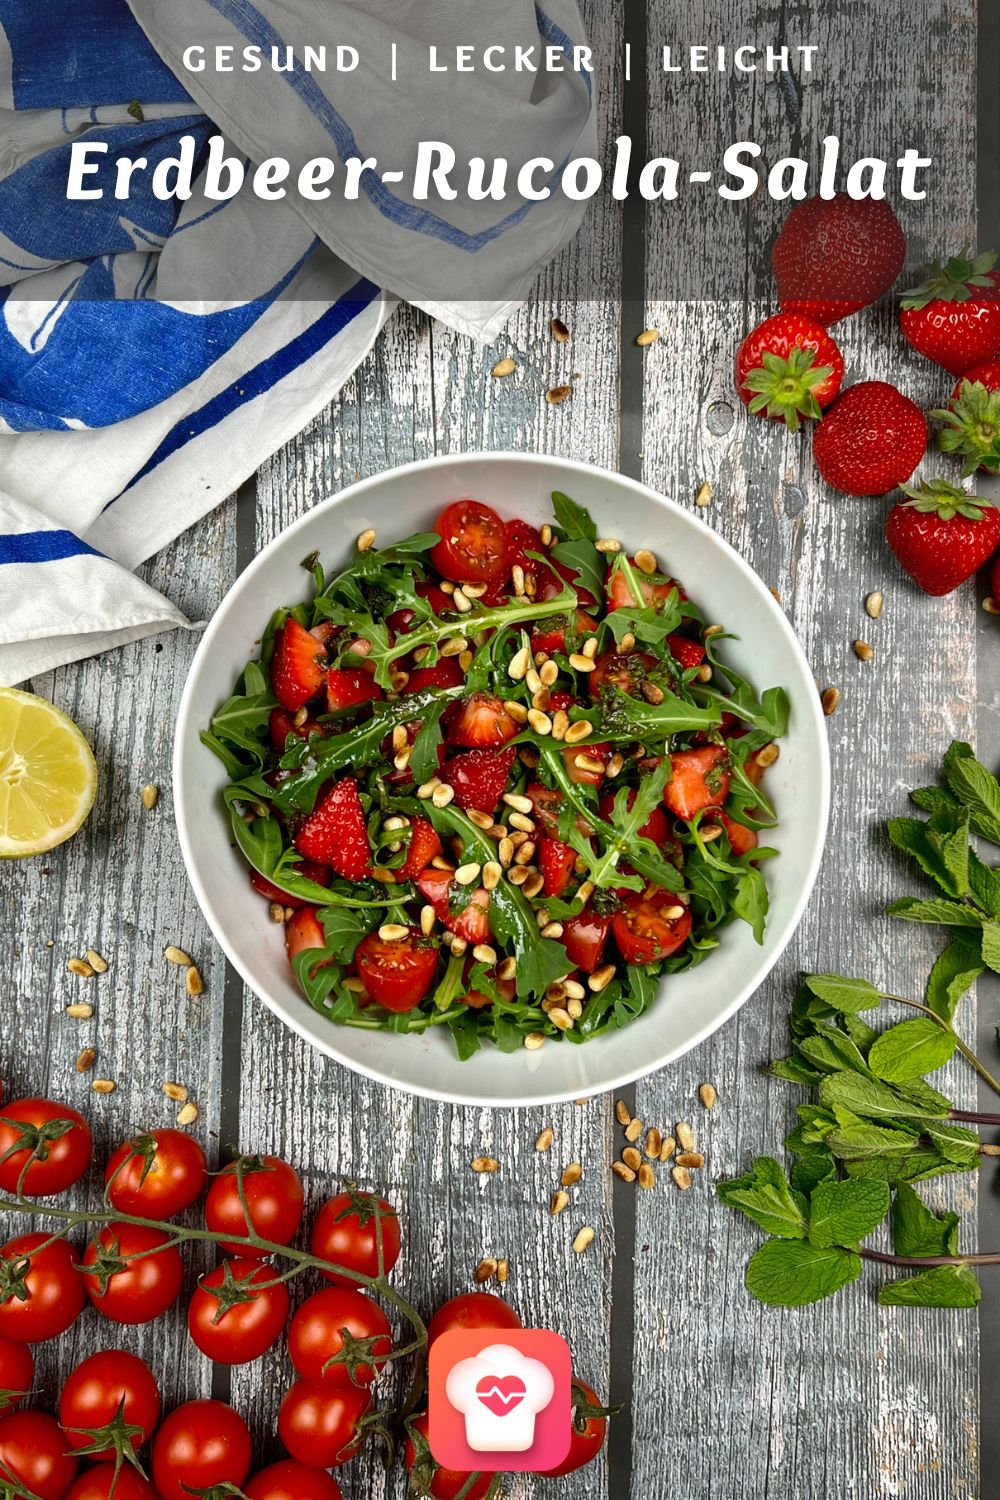 Erdbeer-Rucola-Salat - fruchtiger geht es kaum